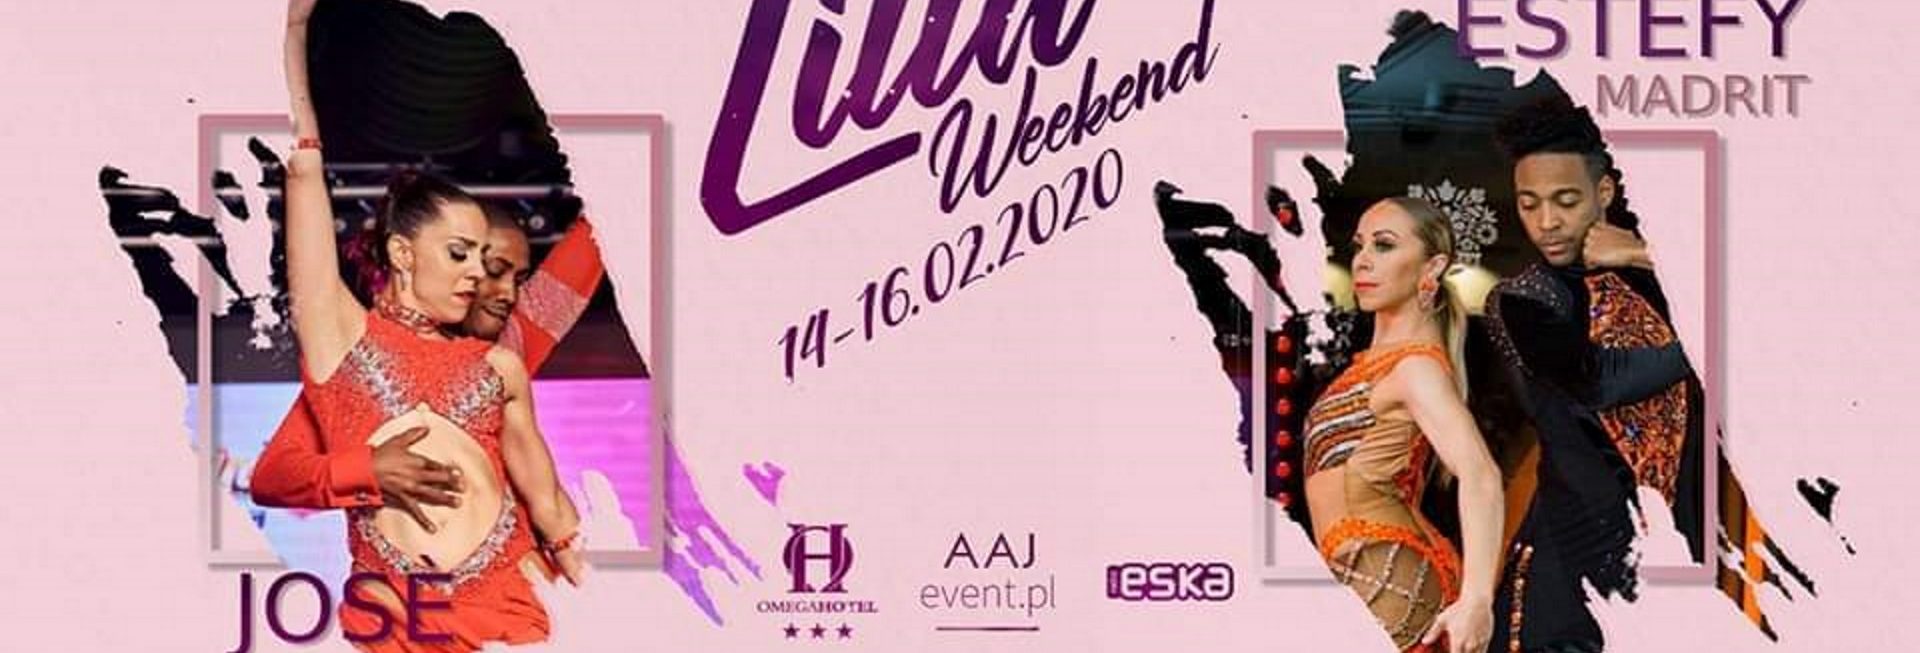 Zdjęcie - plakat zapraszający na Lilla Weekend spotkania tanecznego w Olsztynie. Na plakacie dwa zdjęcia tańczących par oraz loga sponsorów wydarzenia.   